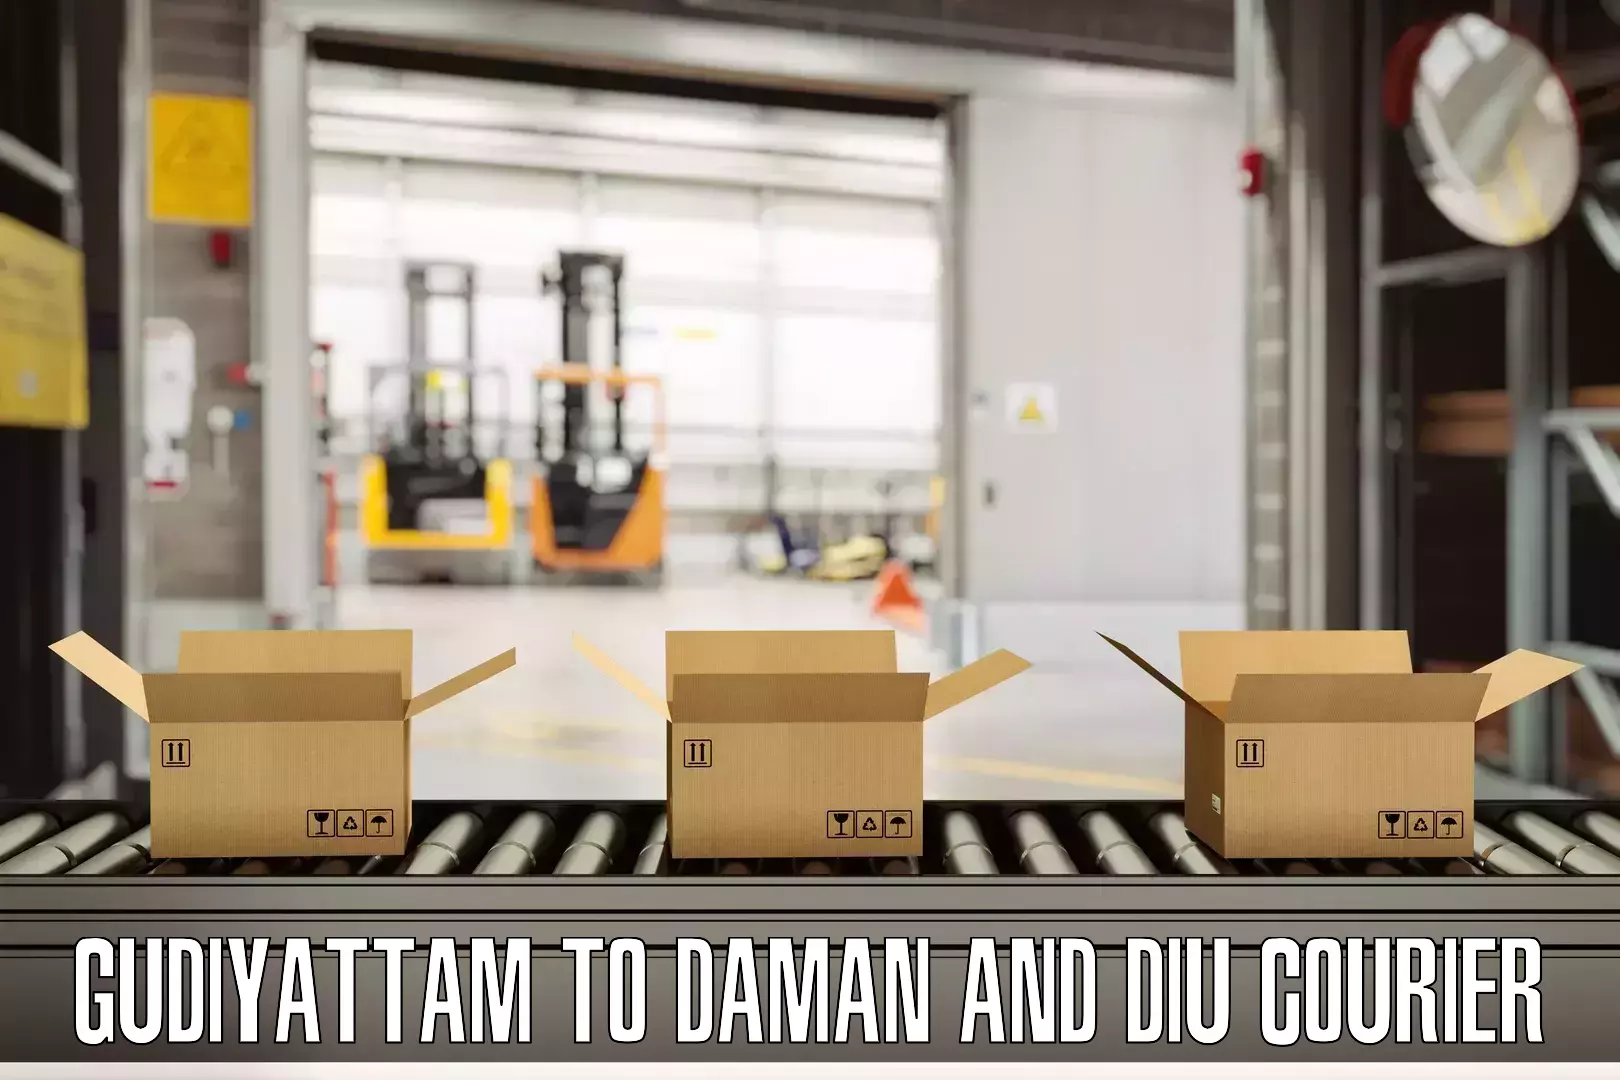 Digital baggage courier Gudiyattam to Daman and Diu